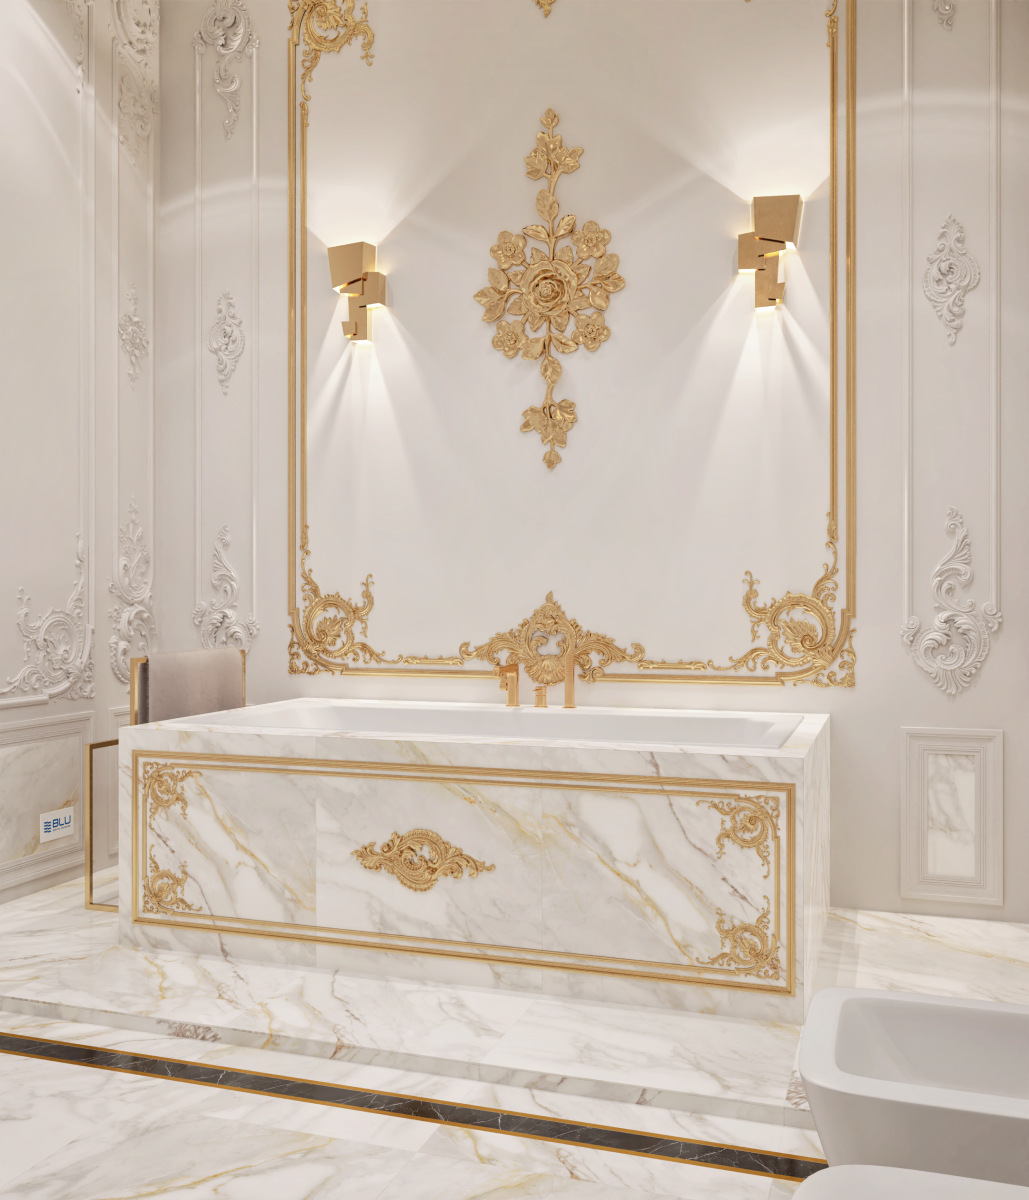 Łazienka w stylu pałacowym ze złotą armatura.